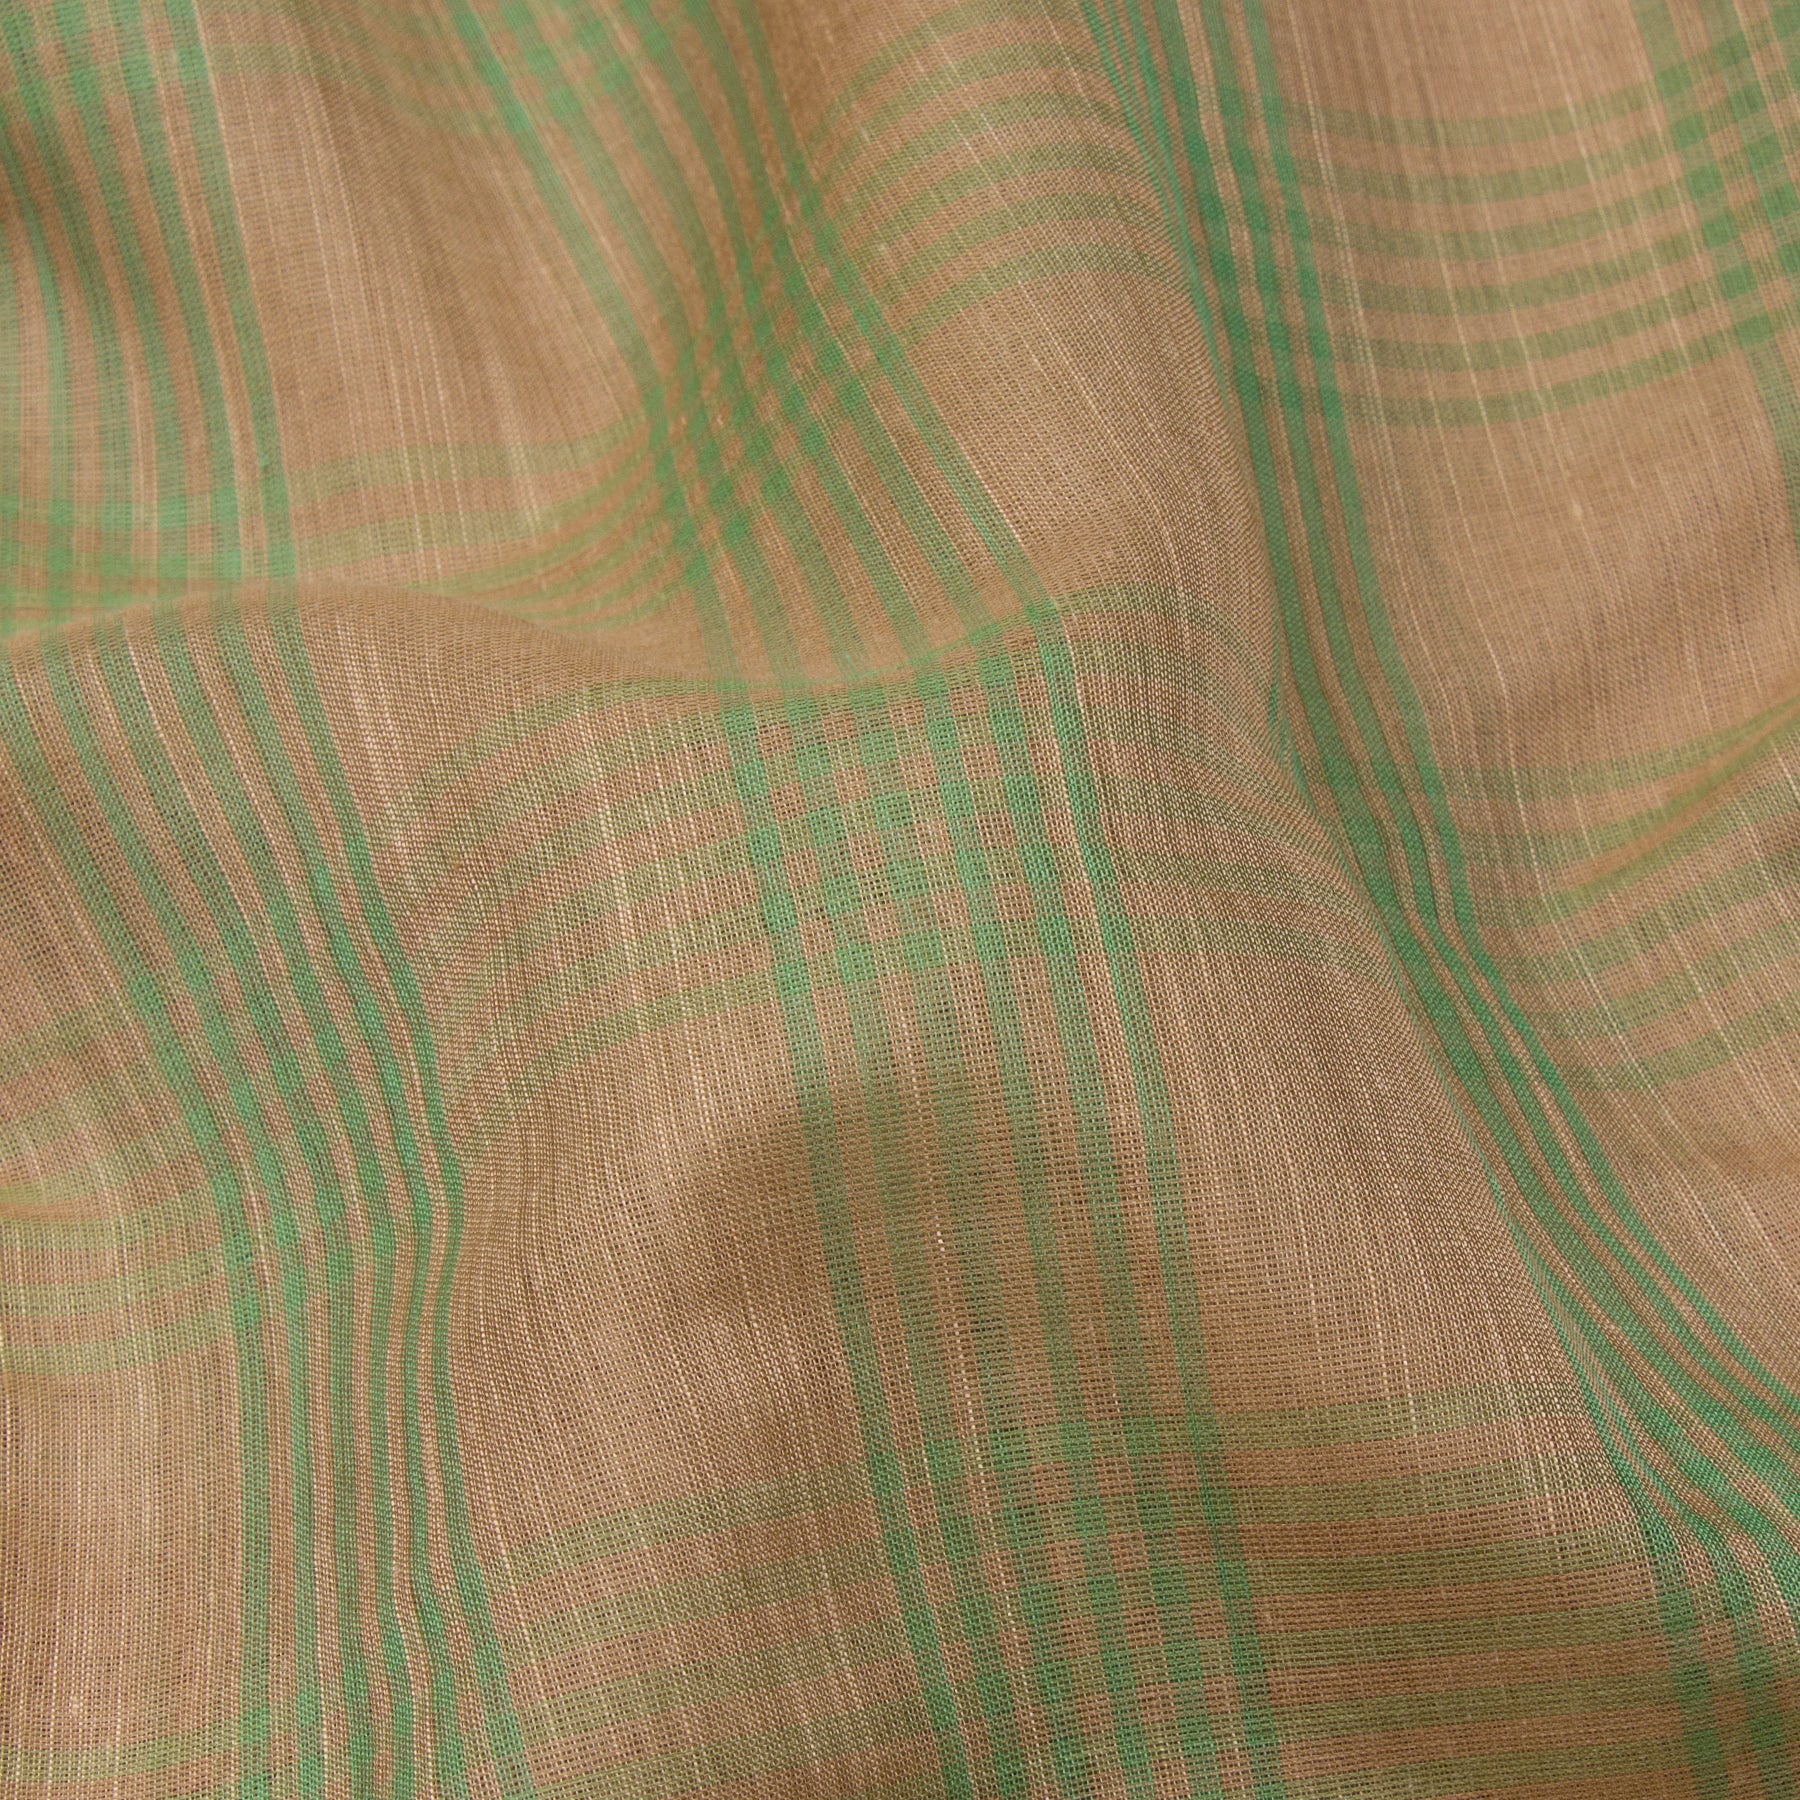 Kanakavalli Gadwal Silk/Cotton Sari 23-604-HS005-13389 - Fabric View